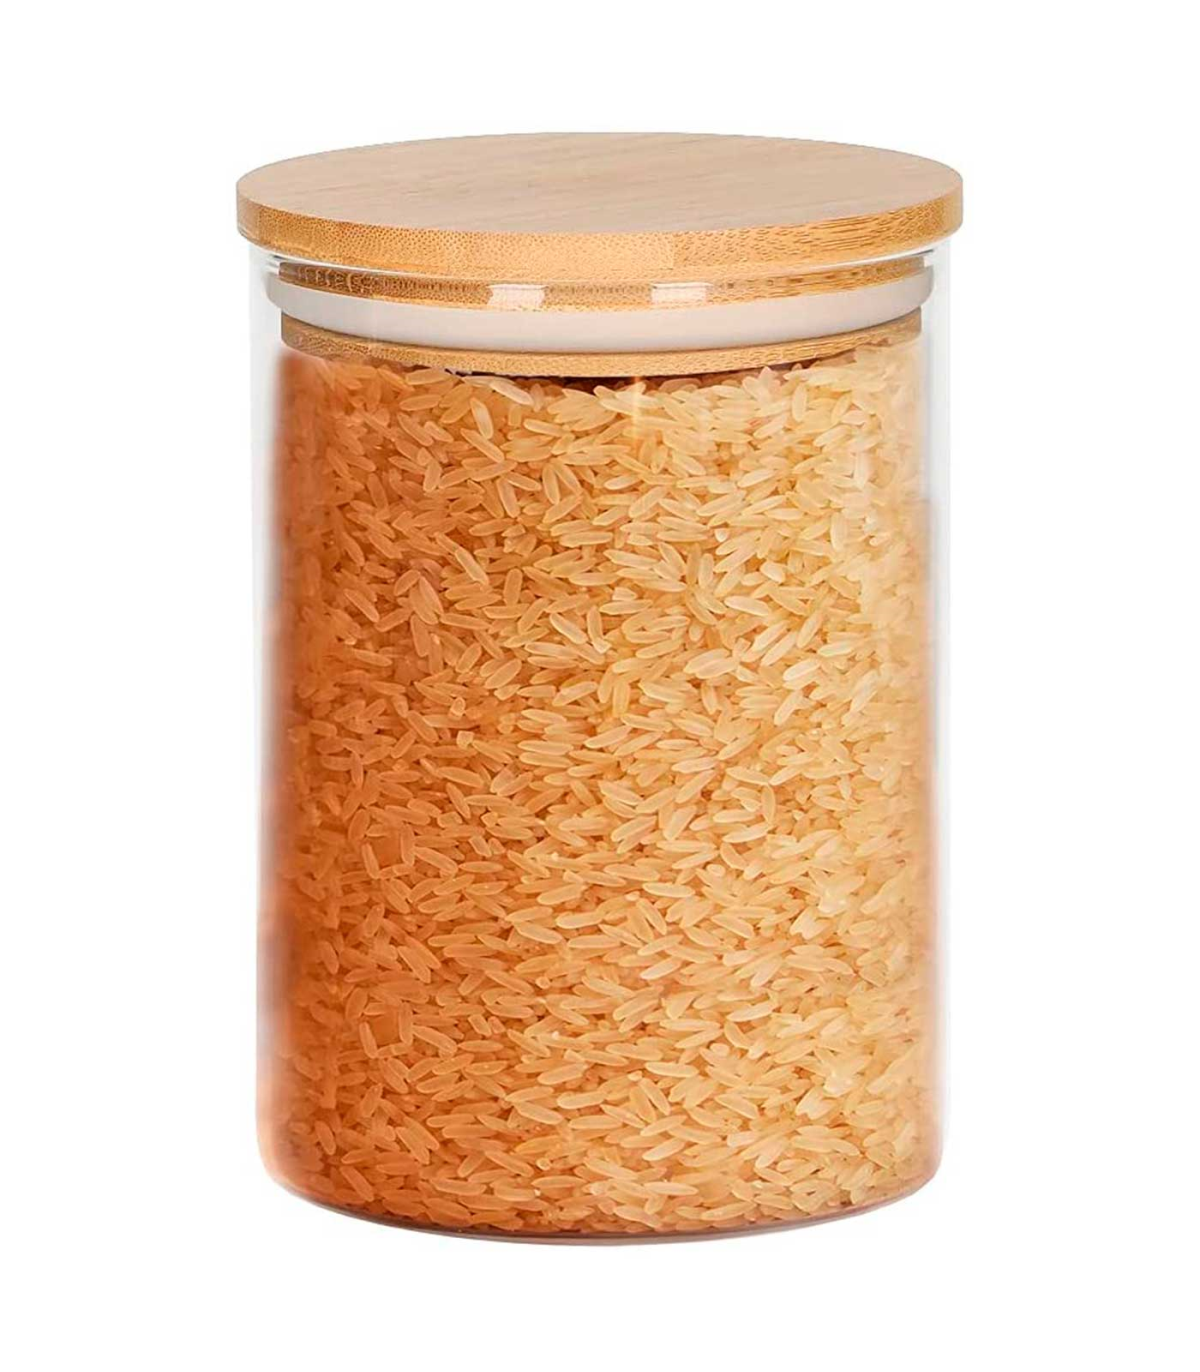 Navaris 3x Bote de cristal con tapa de madera - Set de tarros de 1 L para  almacenamiento de alimentos pasta harina legumbres - Frascos para la cocina